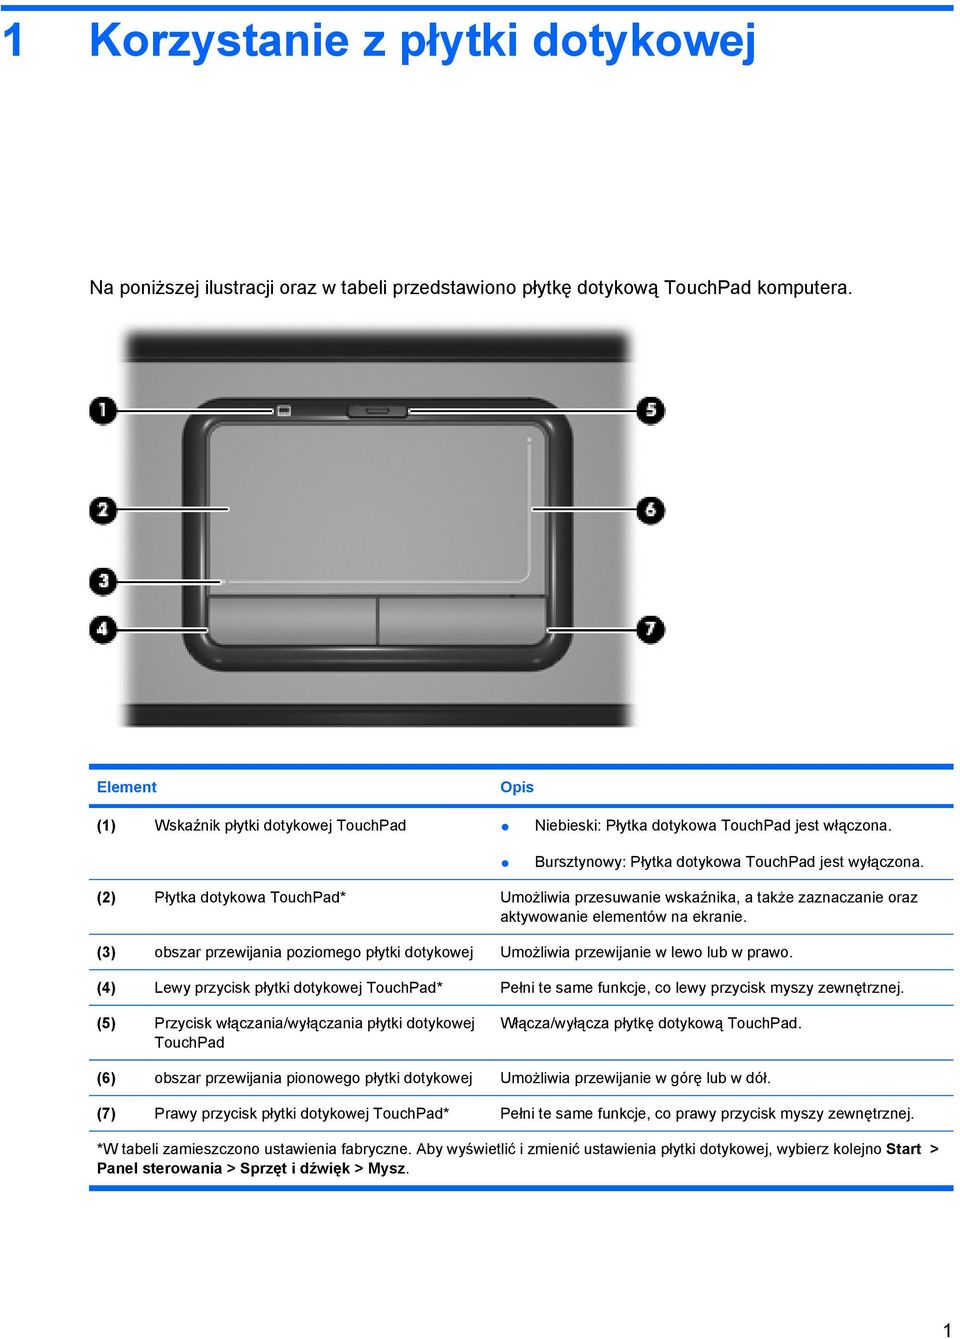 (2) Płytka dotykowa TouchPad* Umożliwia przesuwanie wskaźnika, a także zaznaczanie oraz aktywowanie elementów na ekranie.